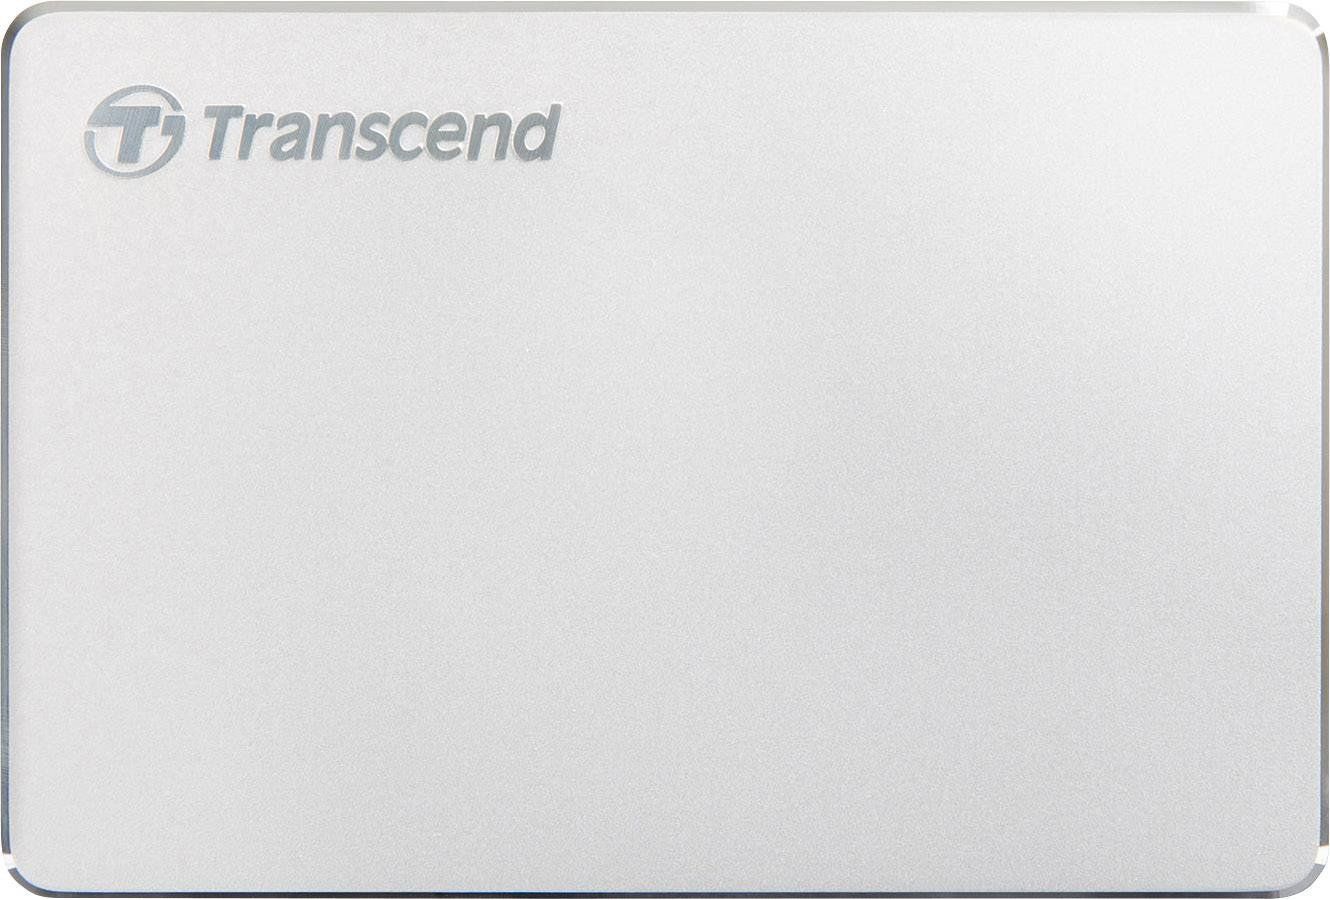 Внешний HDD Transcend StoreJet 25C3S 2TB (TS2TSJ25C3S) цена и фото